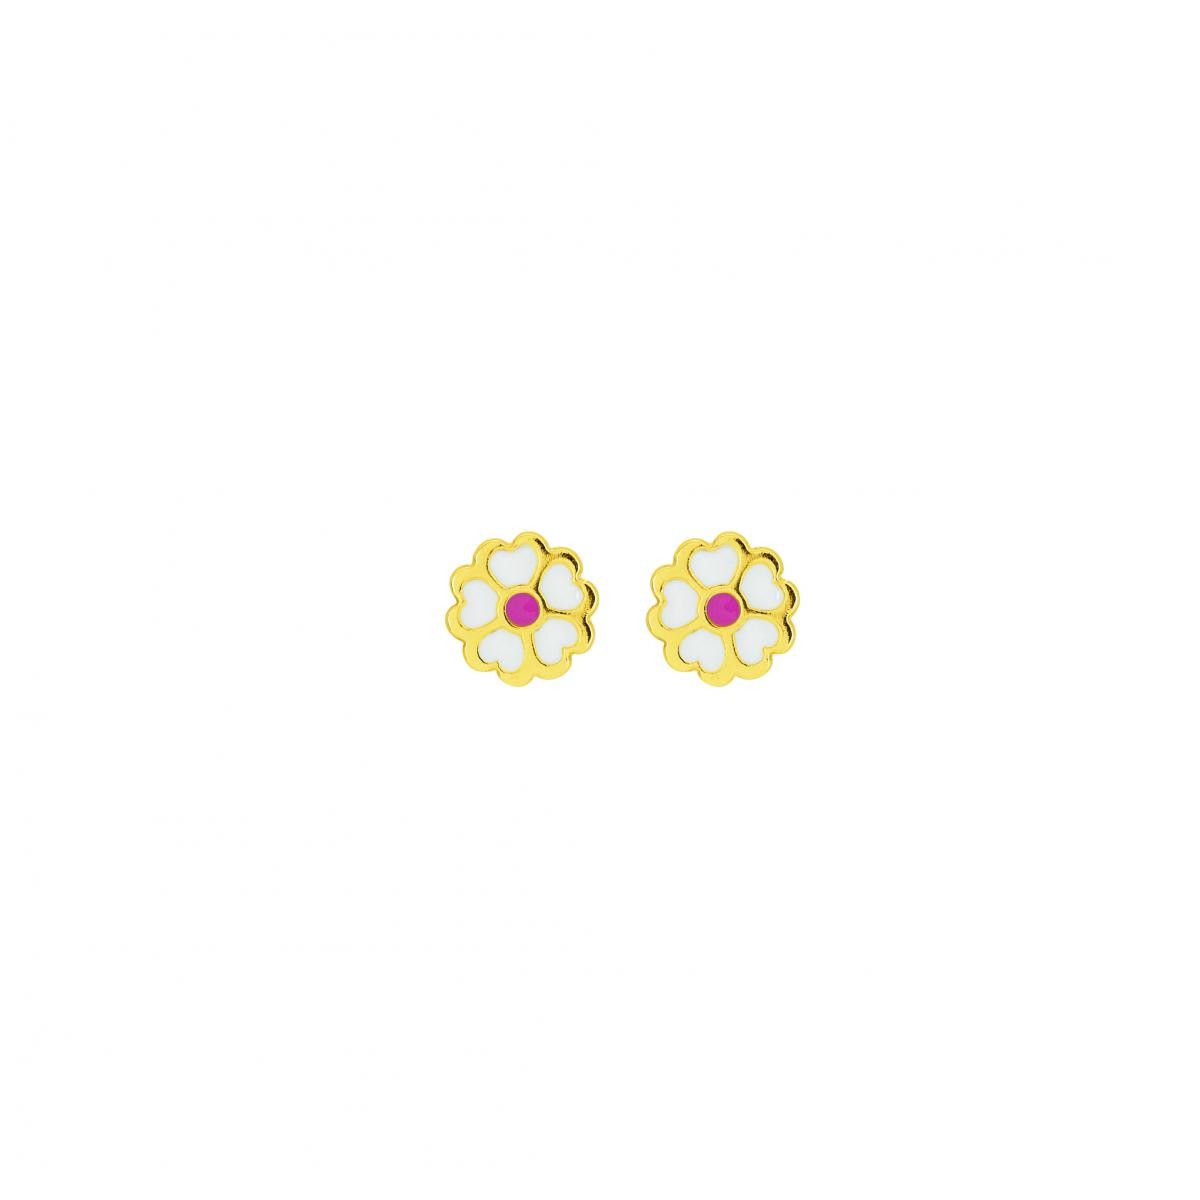 Boucles d'oreilles Fleurs Laquées Or 750/1000 jaune (18K)